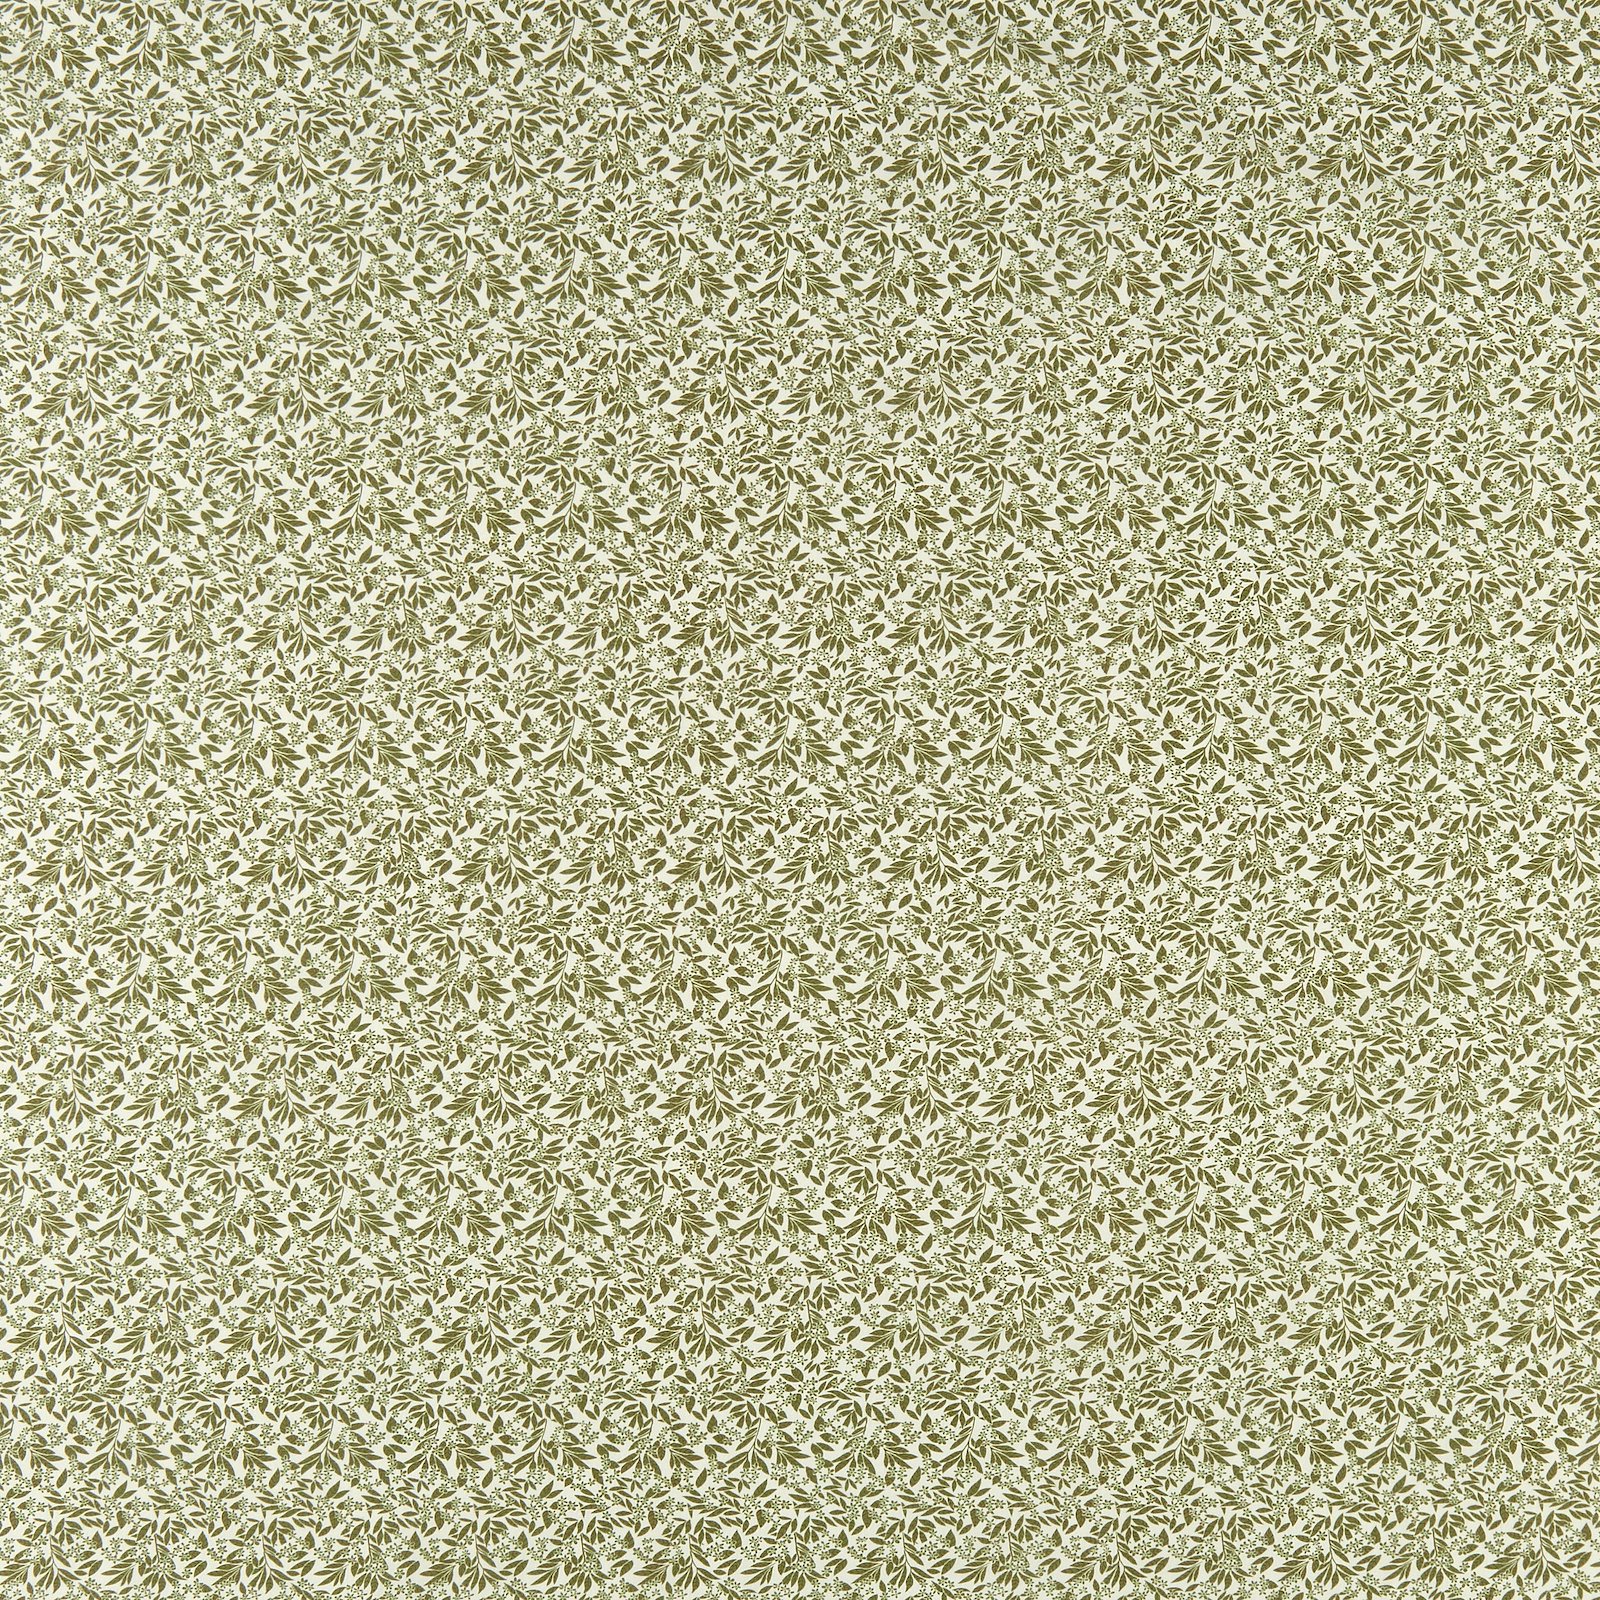 Cotton olive green leaf pattern 852480_pack_sp